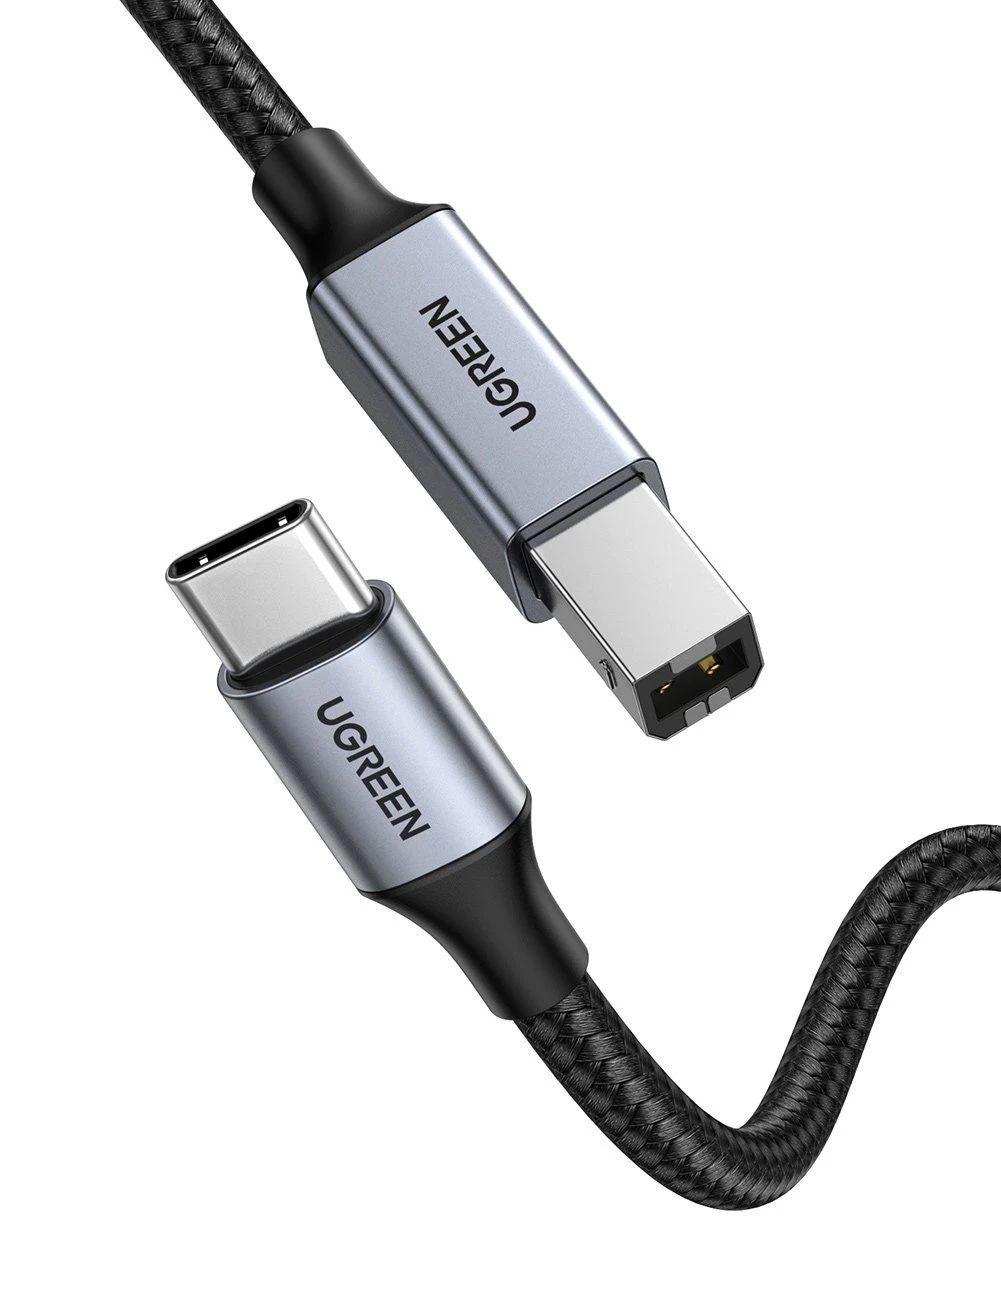 Cáp dữ liệu USB type C ra usb B 2m Ugreen 80807 2.0 đầu bọc nhôm dây dù chống nhiễu màu xám US370 - HÀNG CHÍNH HÃNG